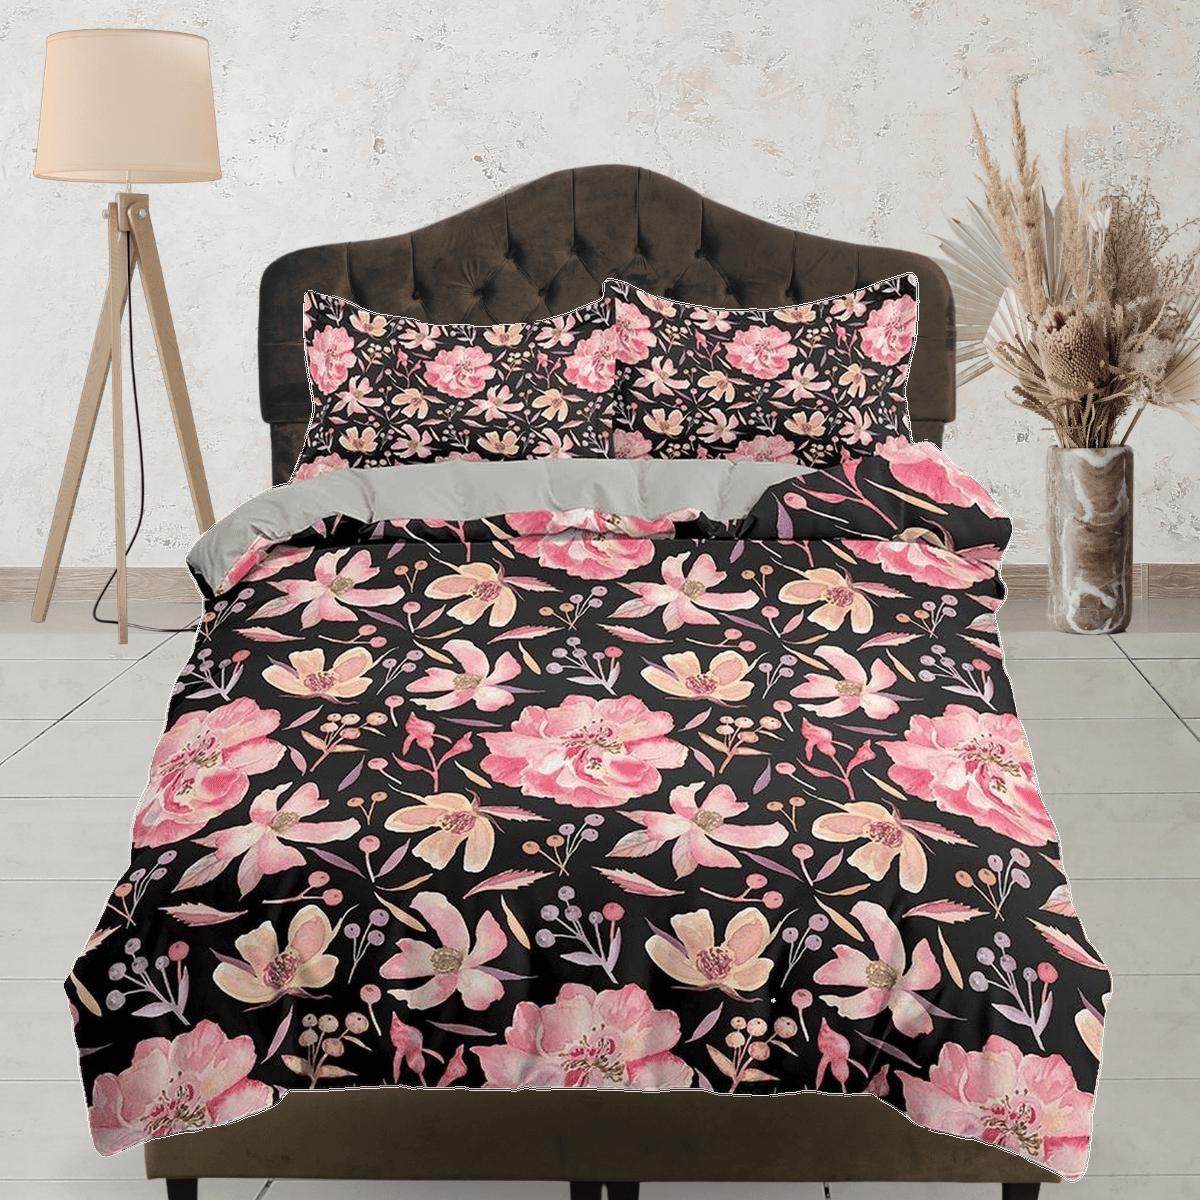 daintyduvet Pink floral prints in black bedding, luxury duvet cover queen, king, boho duvet designer, aesthetic bedding, maximalist full size bedding